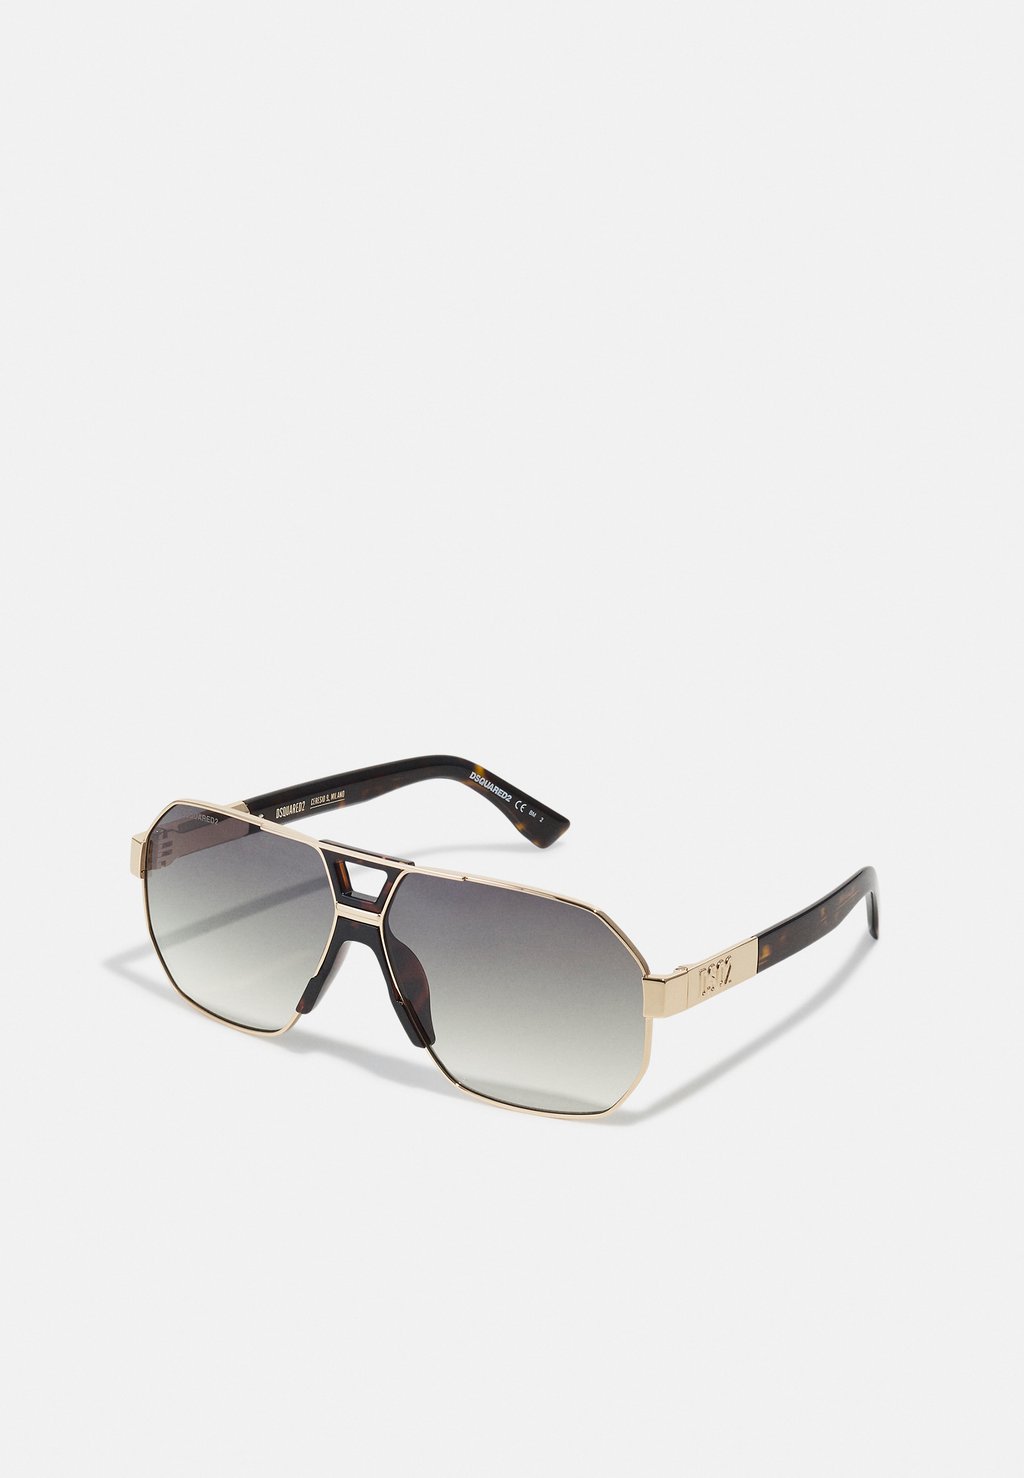 Солнцезащитные очки Dsquared2, золотистый/коричневый ost – jackie brown coloured vinyl lp